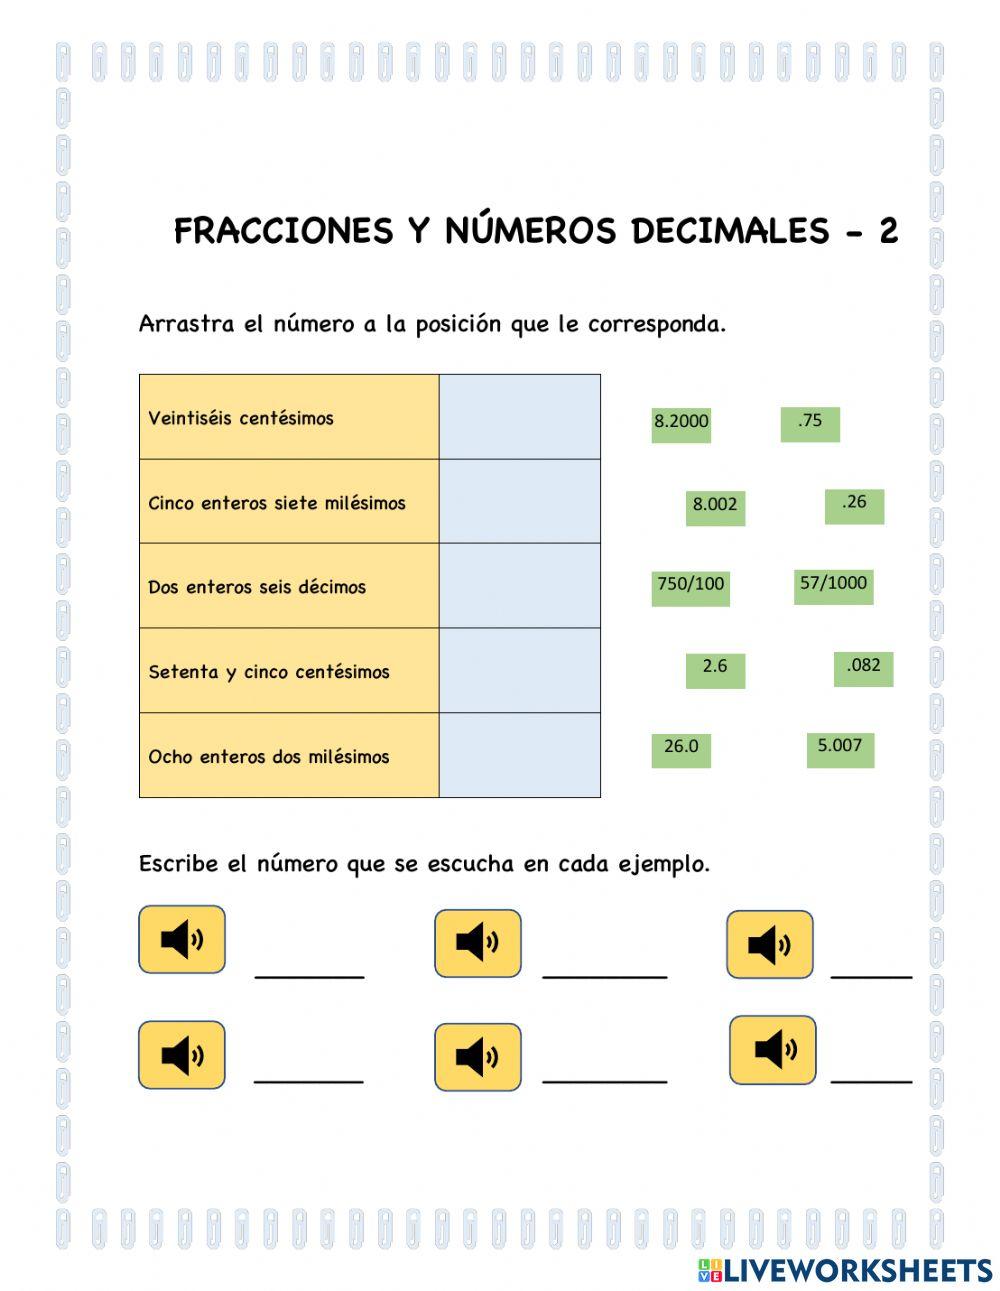 Fracciones y decimales - 2